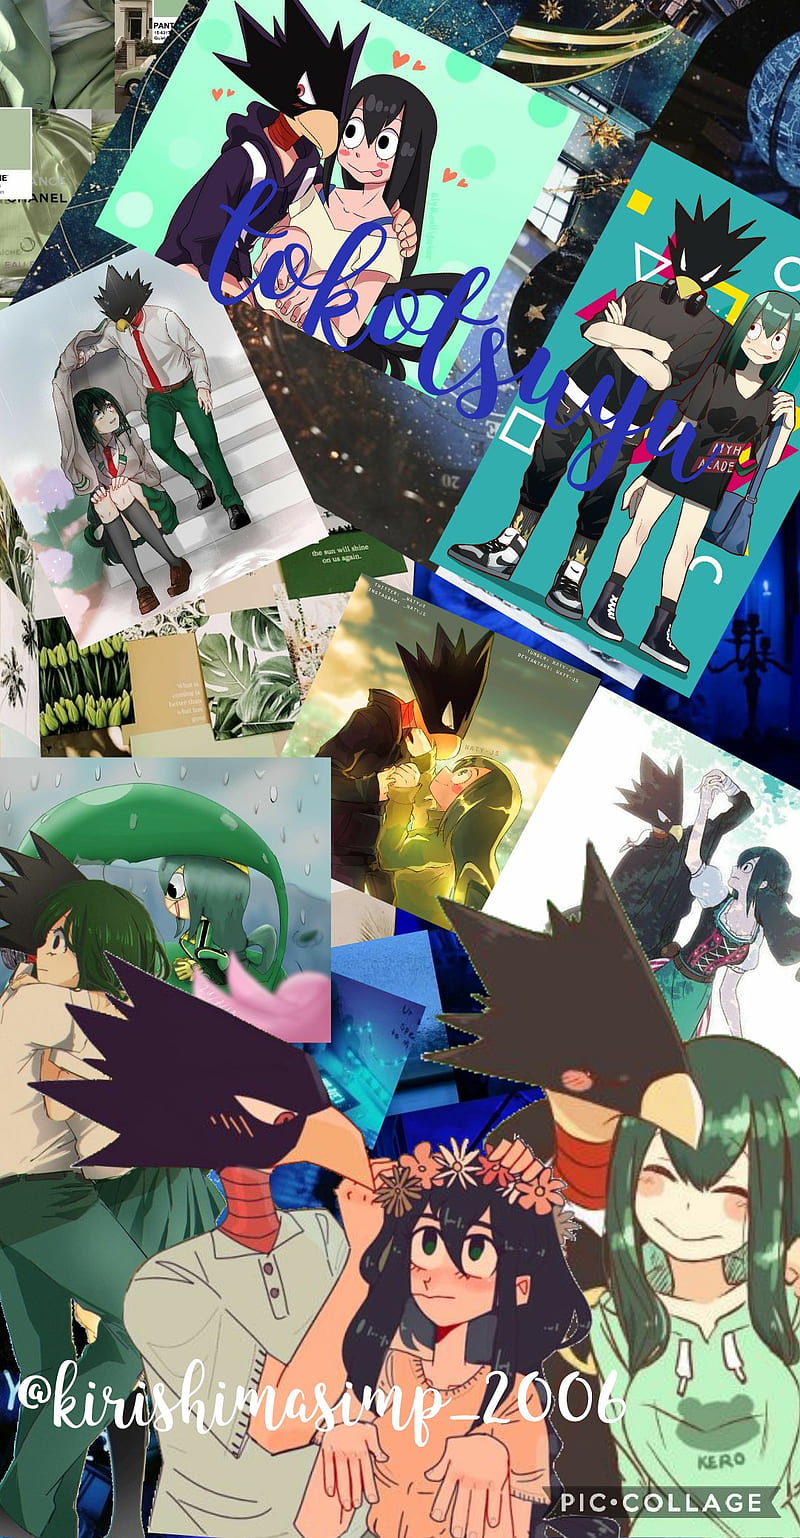 Lysithea von Ordelia - Fiche HD-wallpaper-tokotsuyu-tsukoyomi-green-tokoyami-mha-tsuyu-asui-bnha-tsuyu-asui-cute-mha-ship-tokoyami-fumikage-blue-fumikage-class-1a-anime-froppy